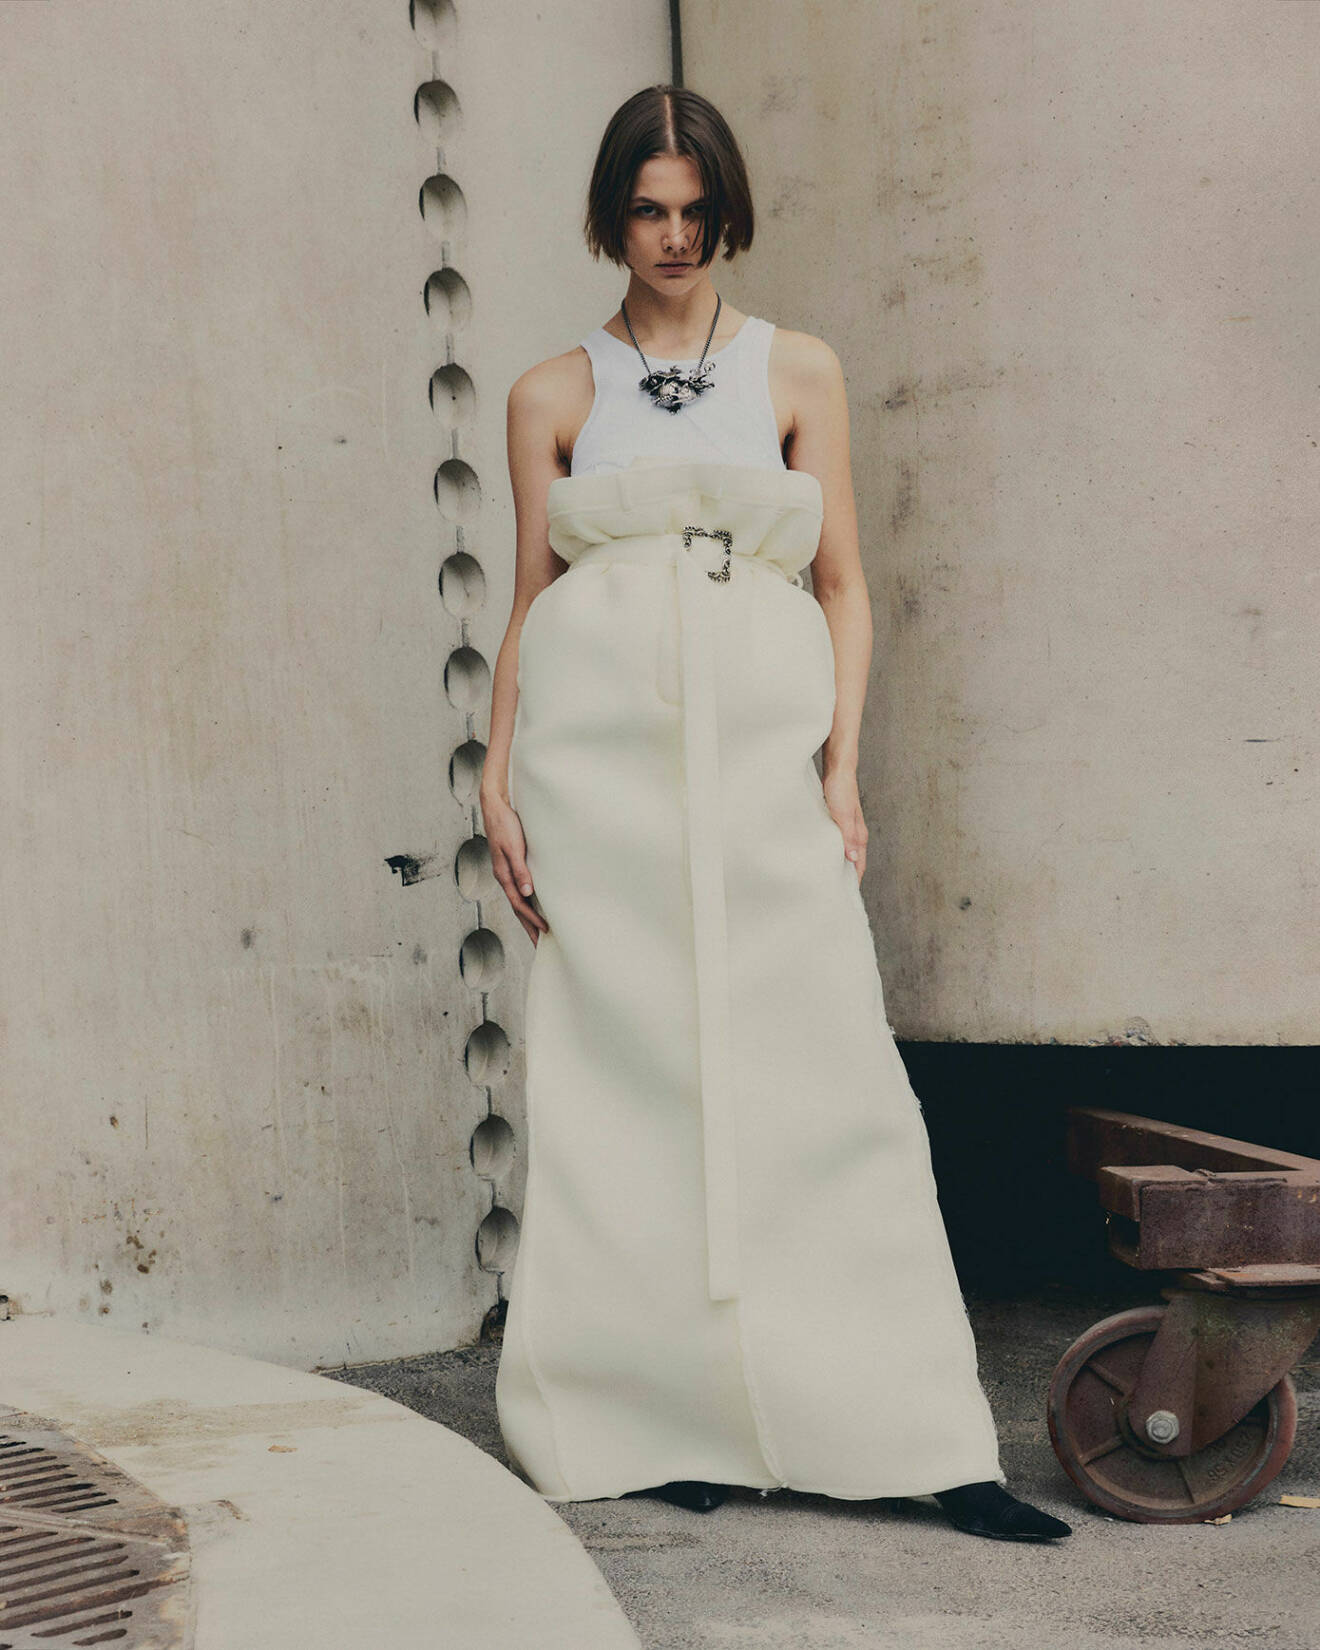 Fotomodellen har på sig ett vitt linne och lång, vit kjol samt halsband, allt från Acne Studios